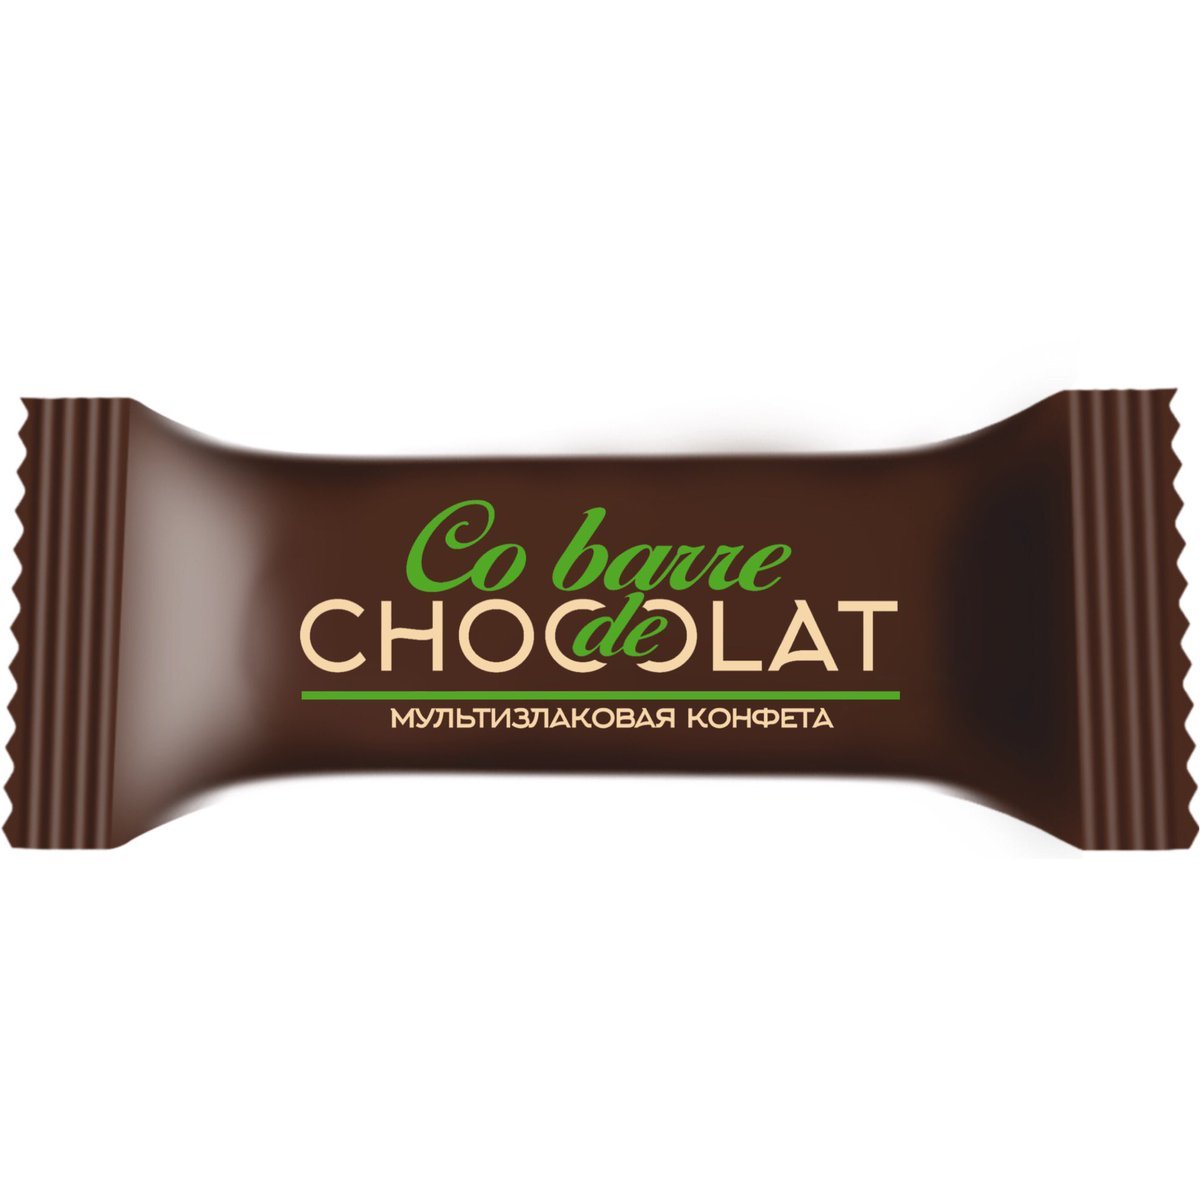 Мультизлаковая конфета Cobarde Chocolate